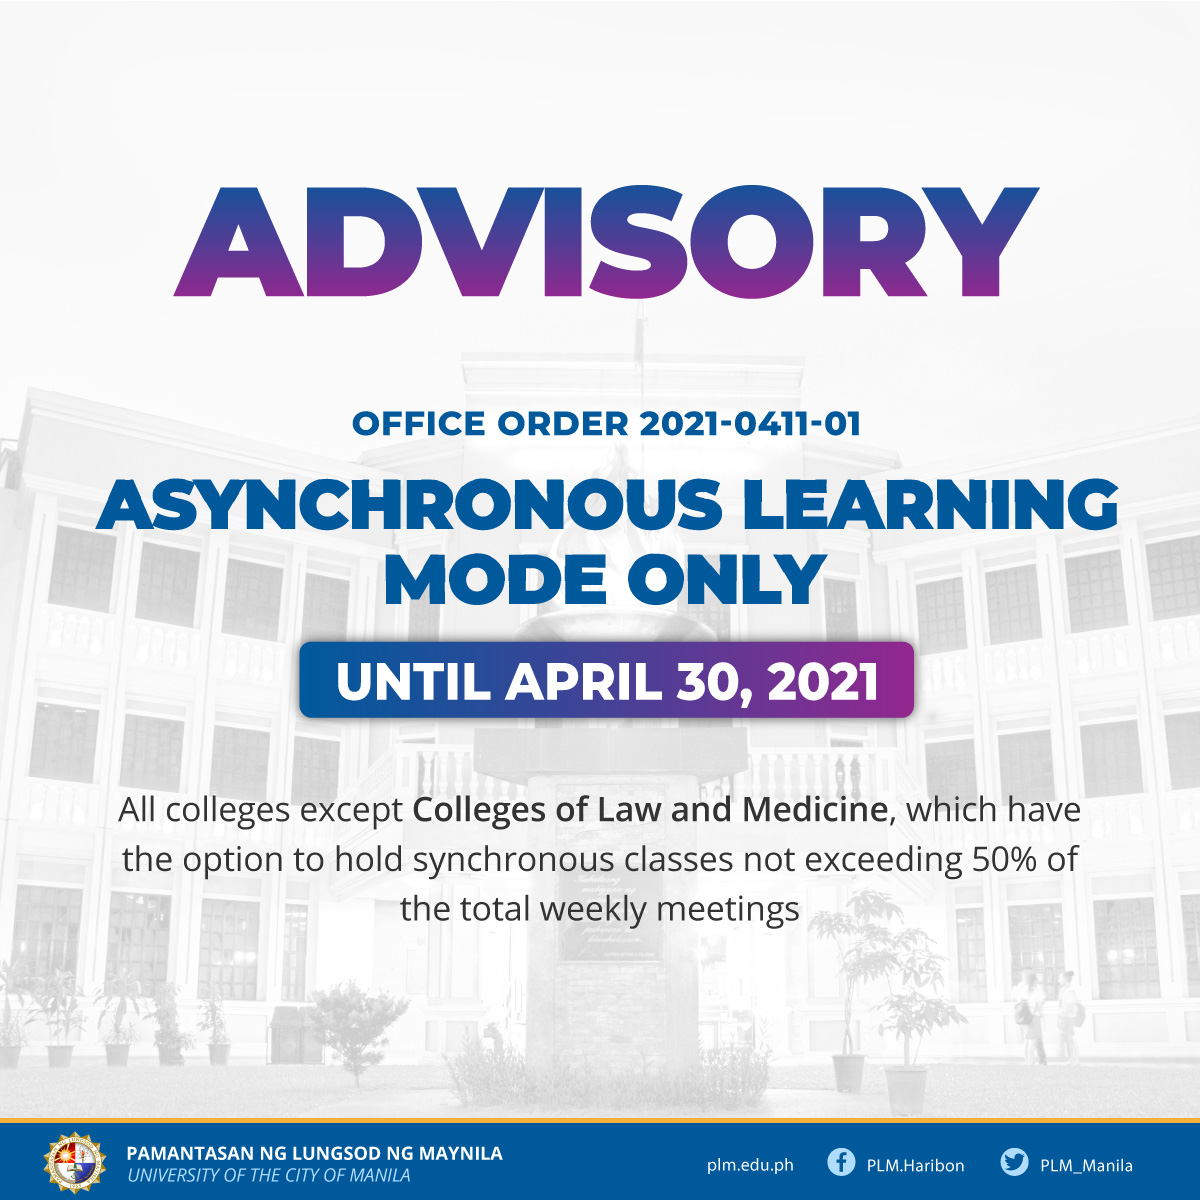 Asynchronous classes until April 30, 2021